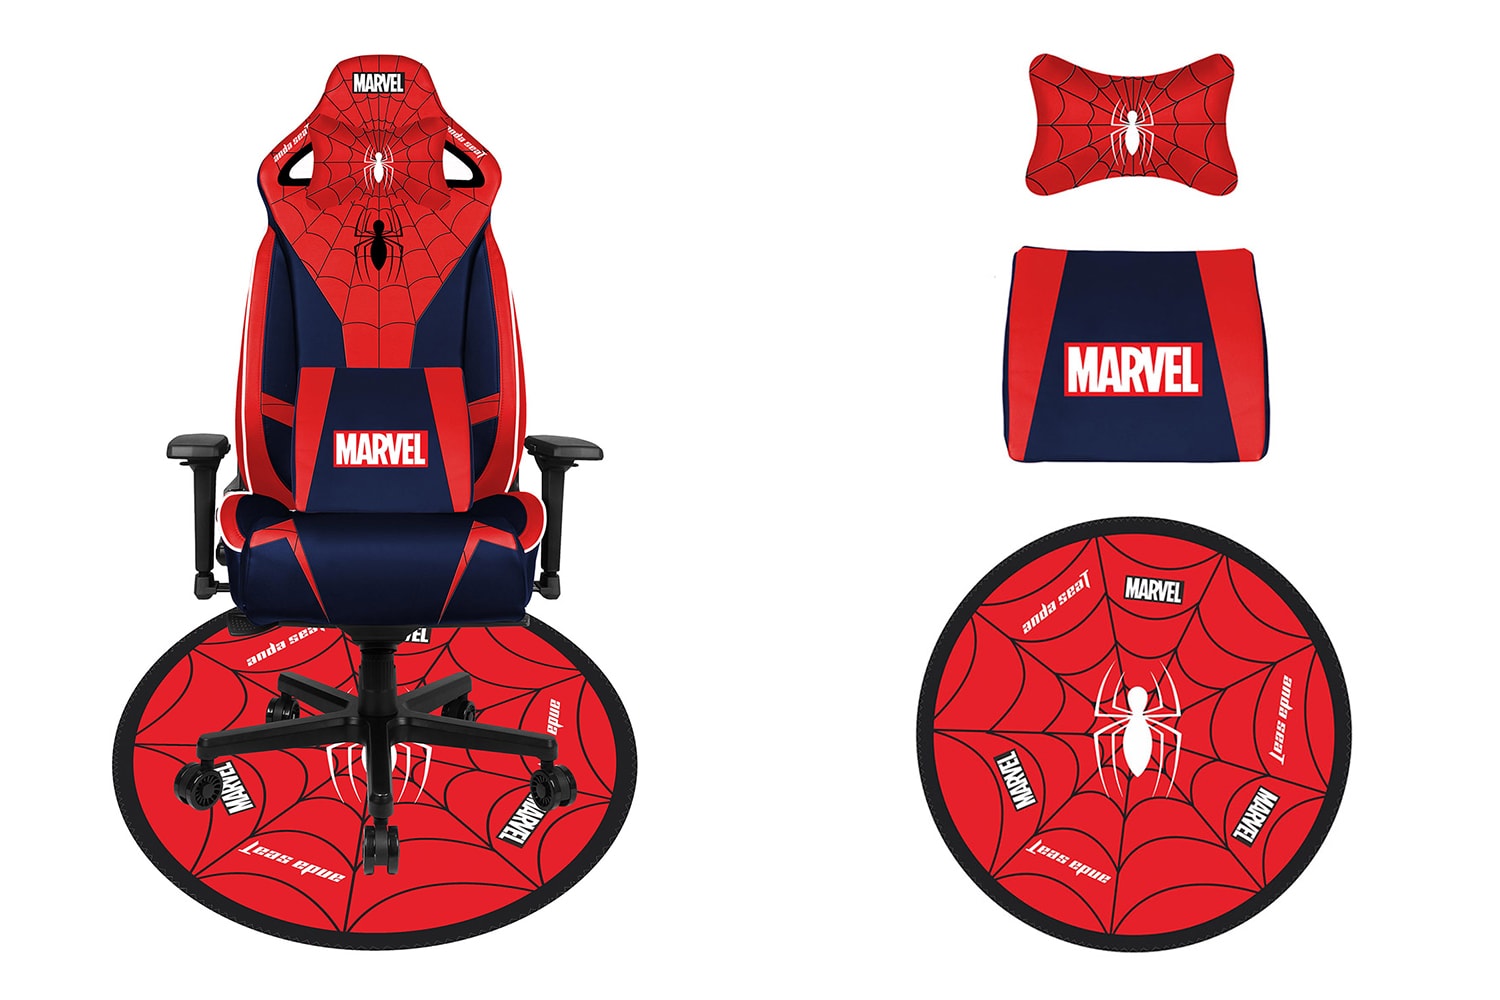 Игровые кресла AndaSeat Disney Marvel Avengers Информация о выпуске Купить Цена Капитан Америка Железный Человек Человек-Паук Человек-Муравей